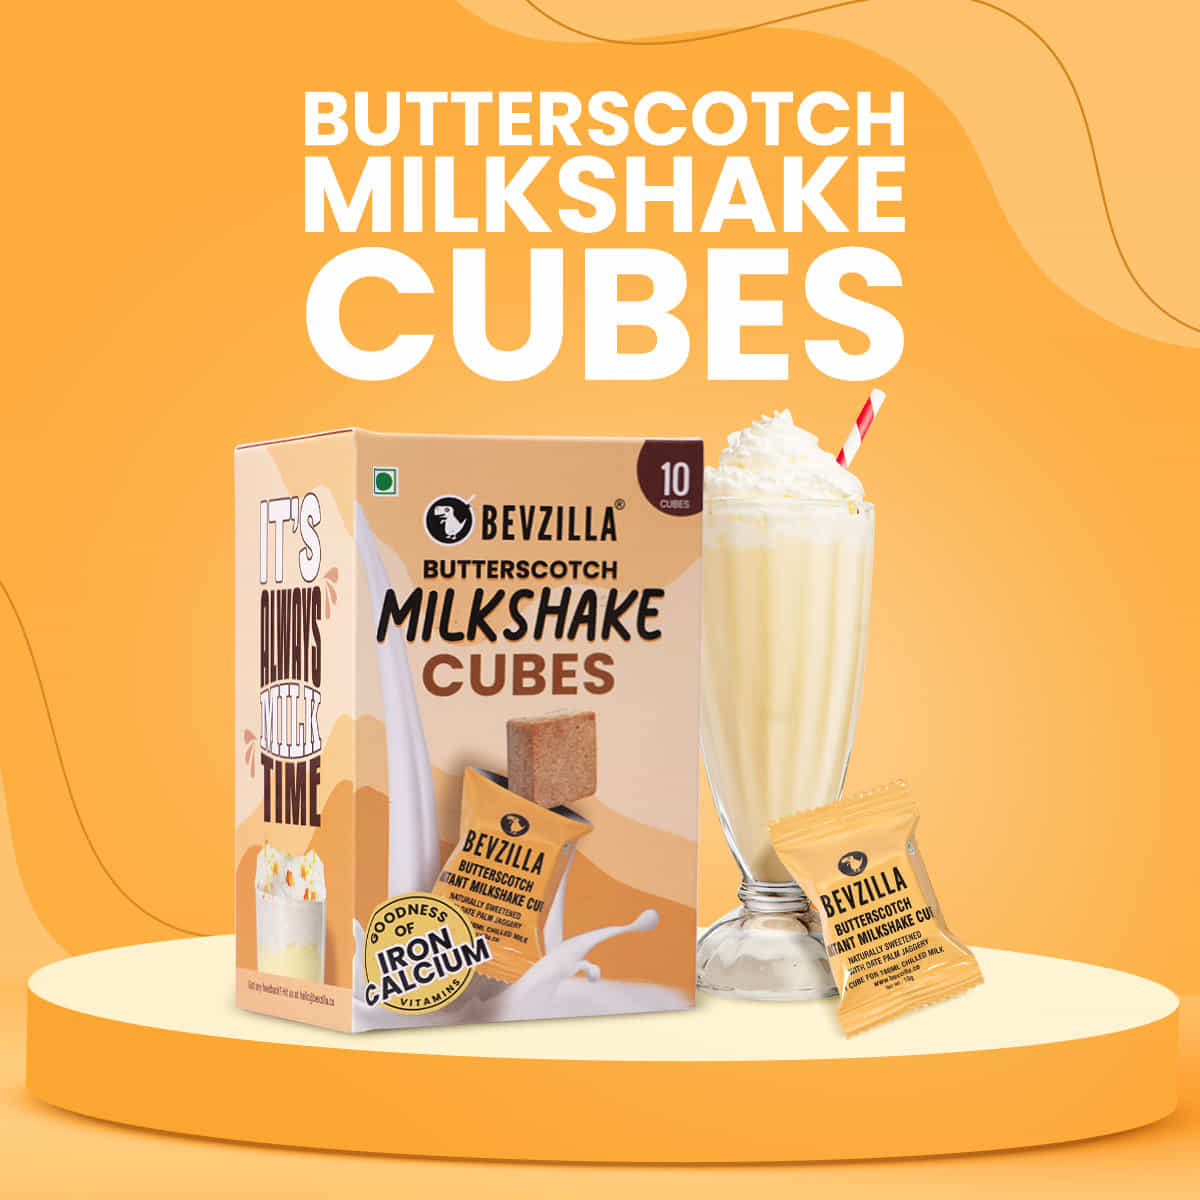 10 Butterscotch Milkshake Cubes